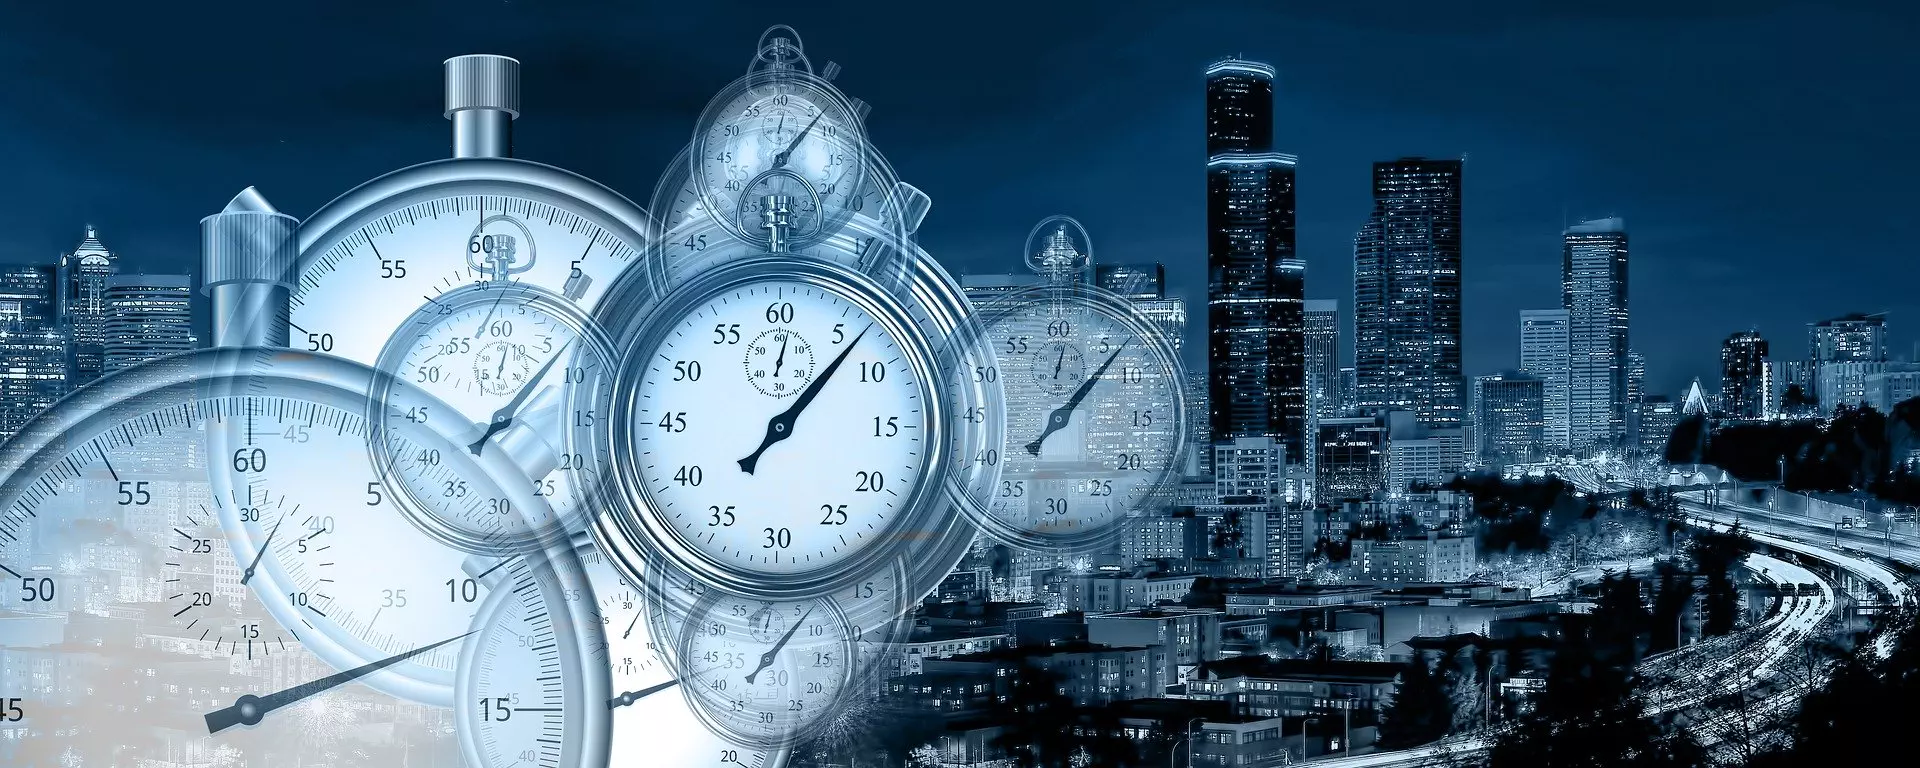 Zeitmanagement verbessern - Bild von Uhren und einer Stadt